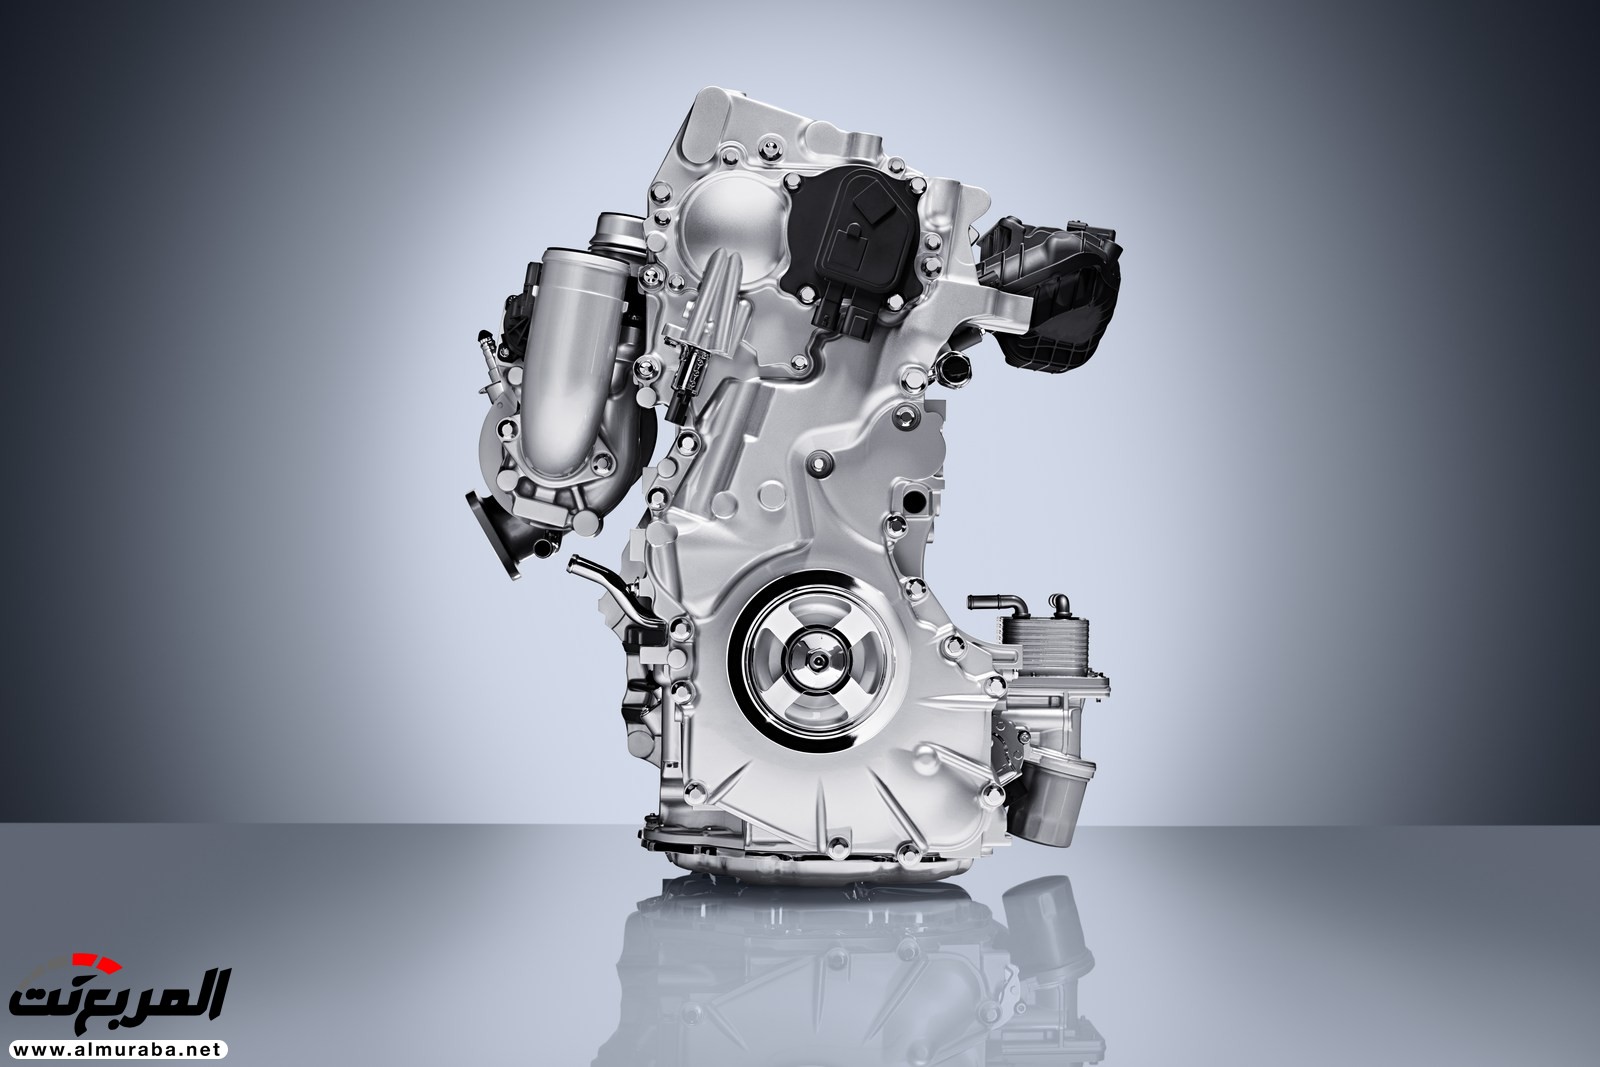 إنفينيتي QX50 الجديدة كلياً 2019 تظهر رسمياً بمحرك هو الأكثر تطوراً 6